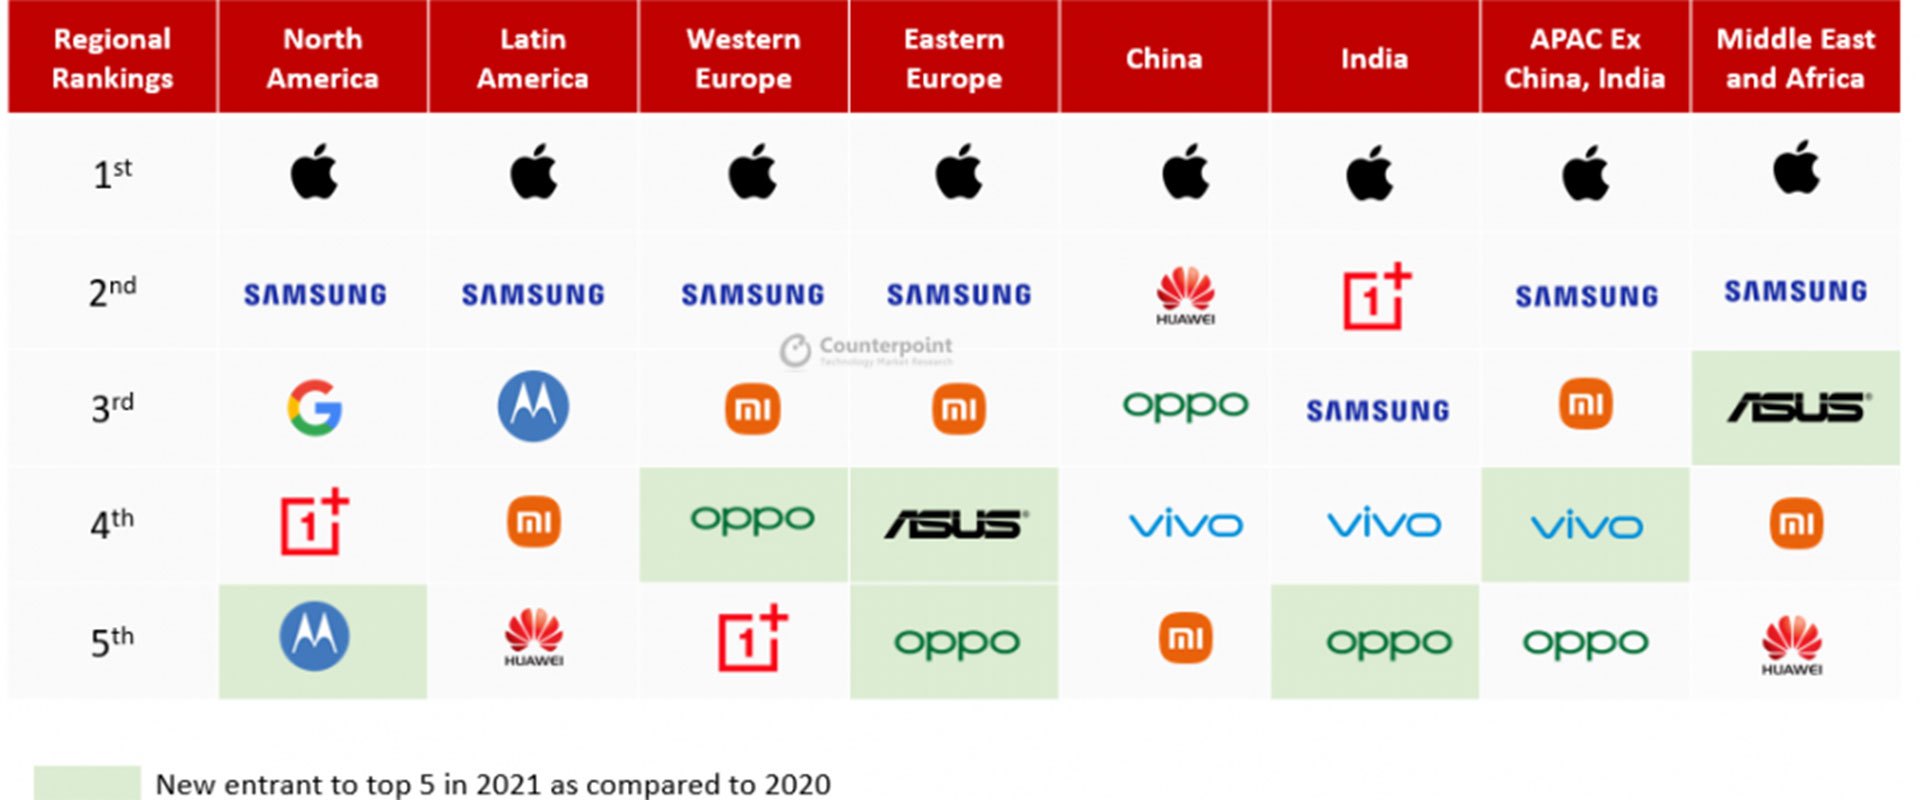 Sales of smartphones in different regions